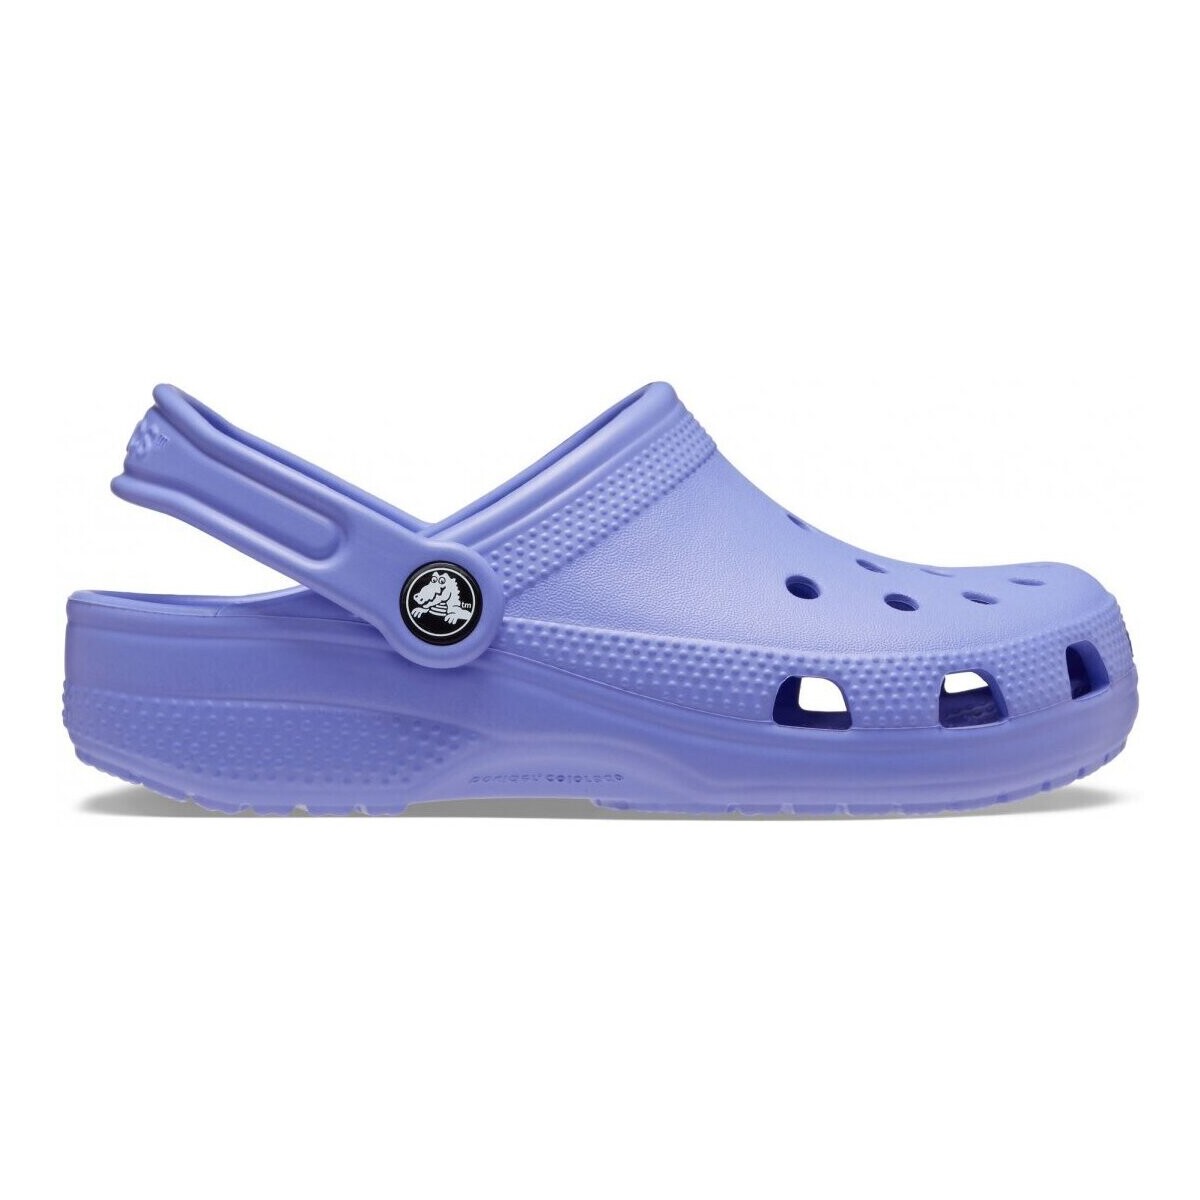 Zapatos Niños Sandalias Crocs CR.206990-DIVI Digital violet